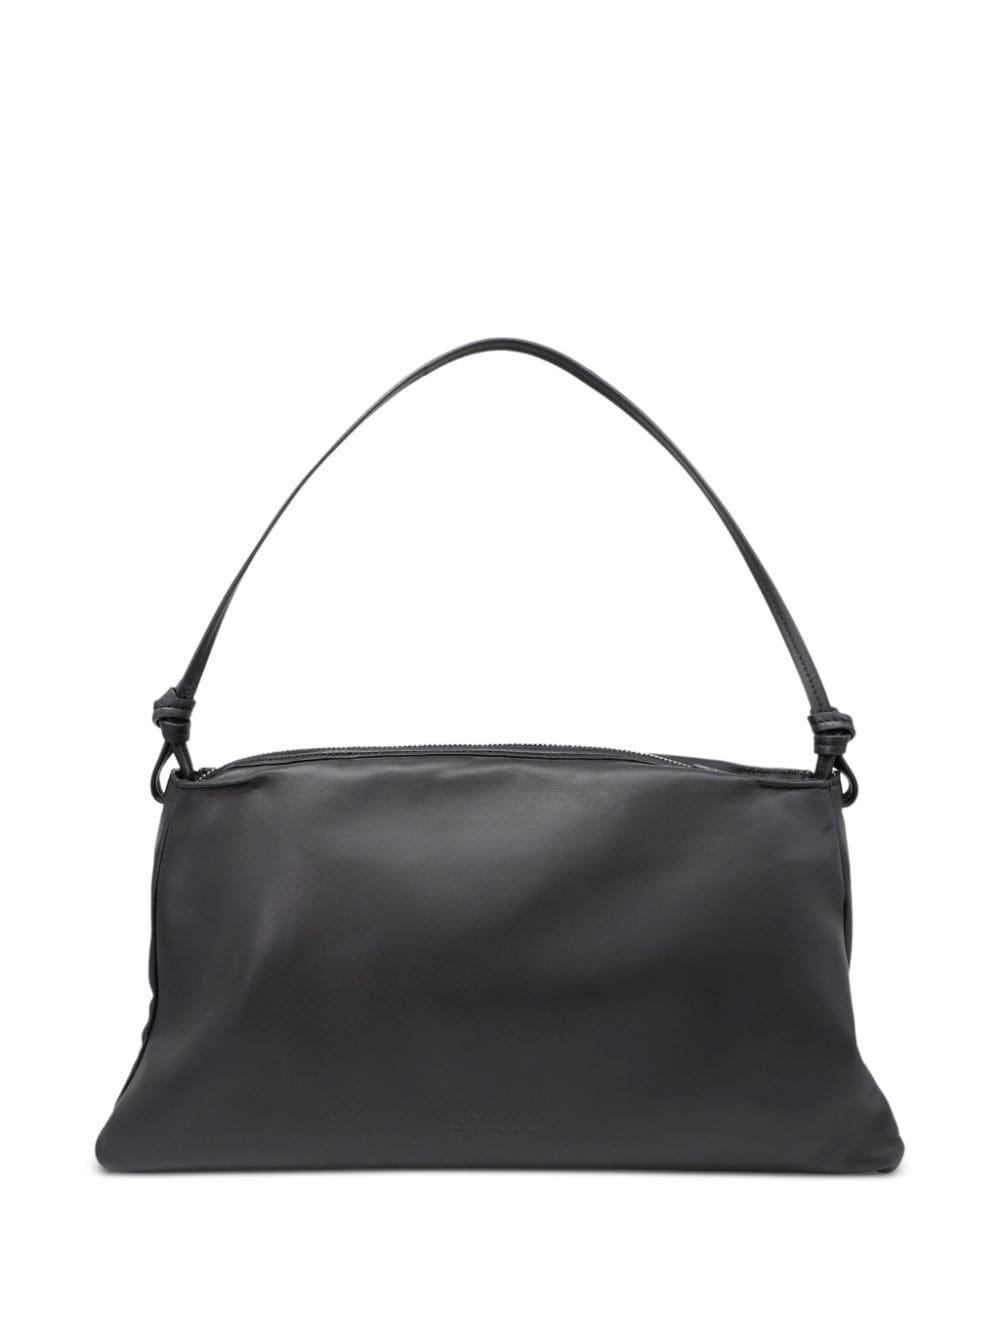 STAUD Vivi Leather Shoulder Bag in Black | Lyst